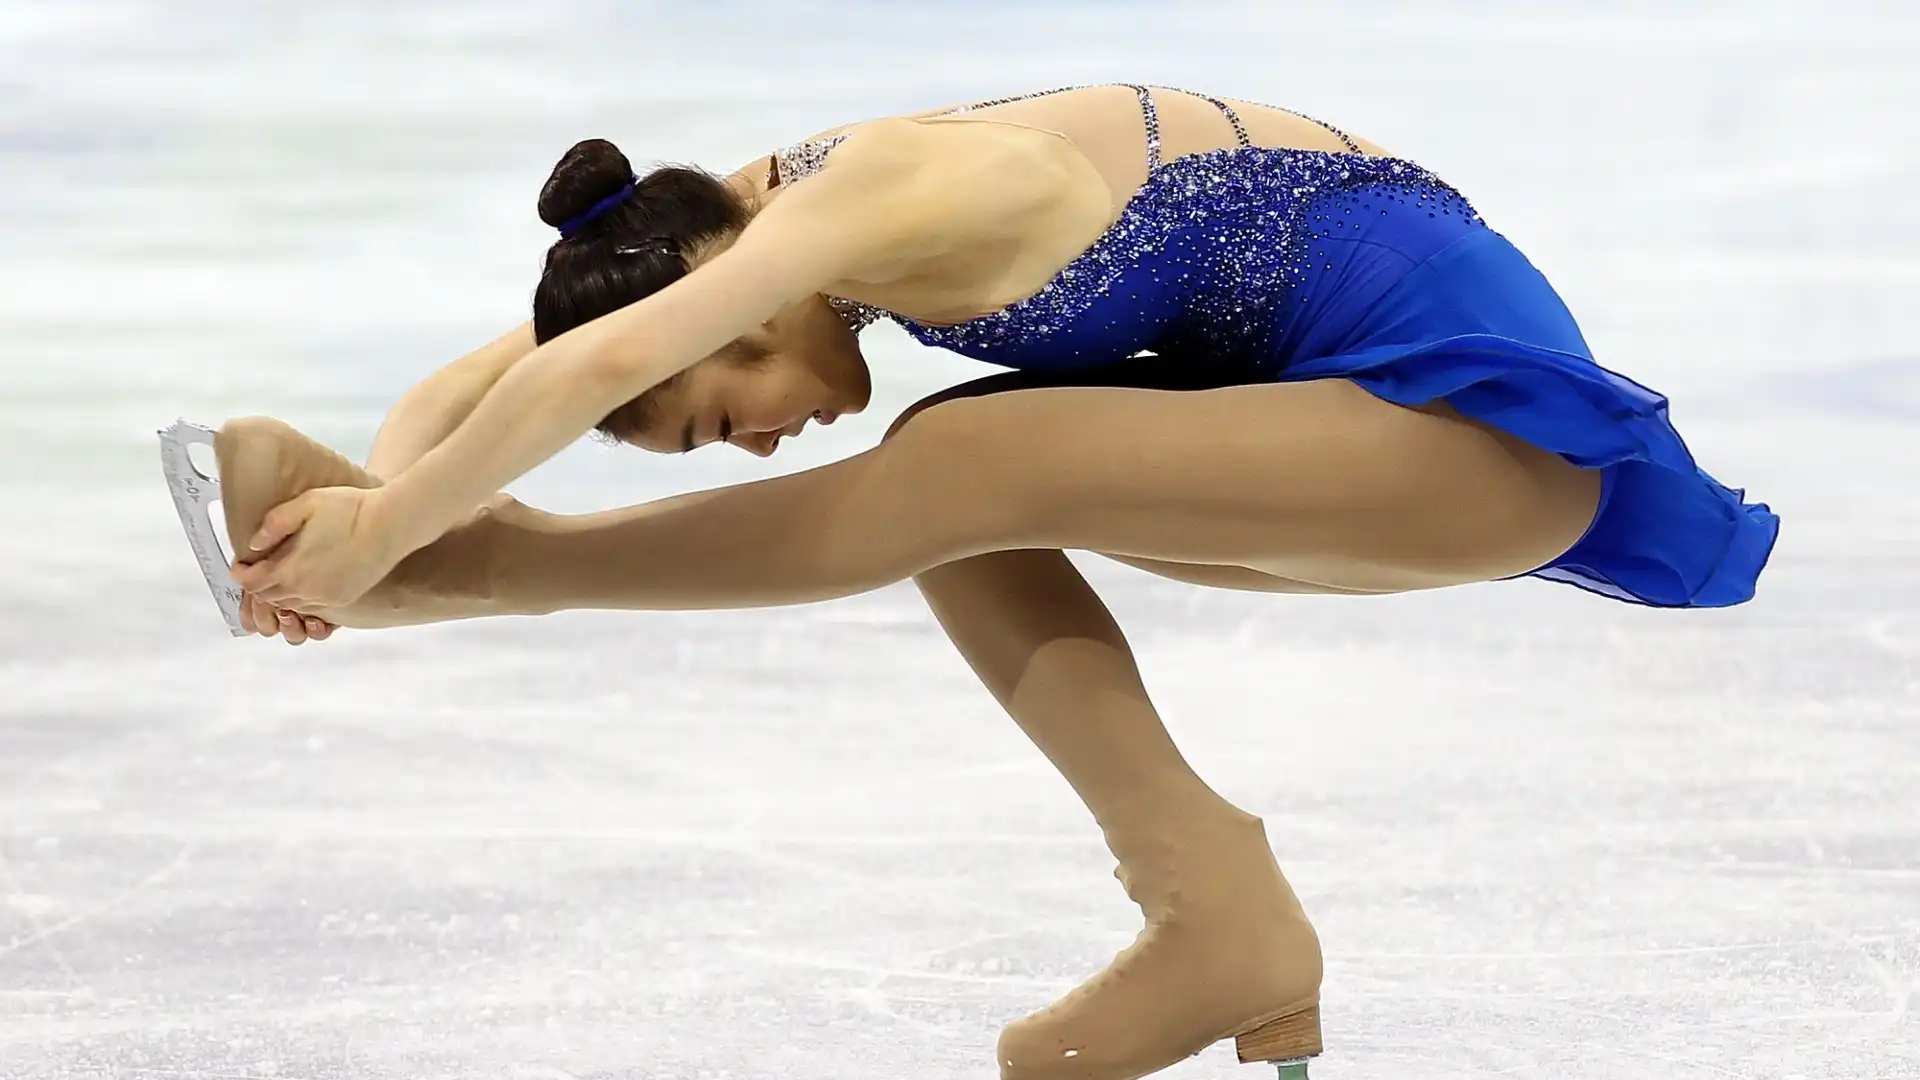 Kim Yu-na (Pattinaggio artistico): patrimonio netto stimato 26 milioni di dollari. Medaglia d'Oro alle Olimpiadi invernali di Vancouver 2010